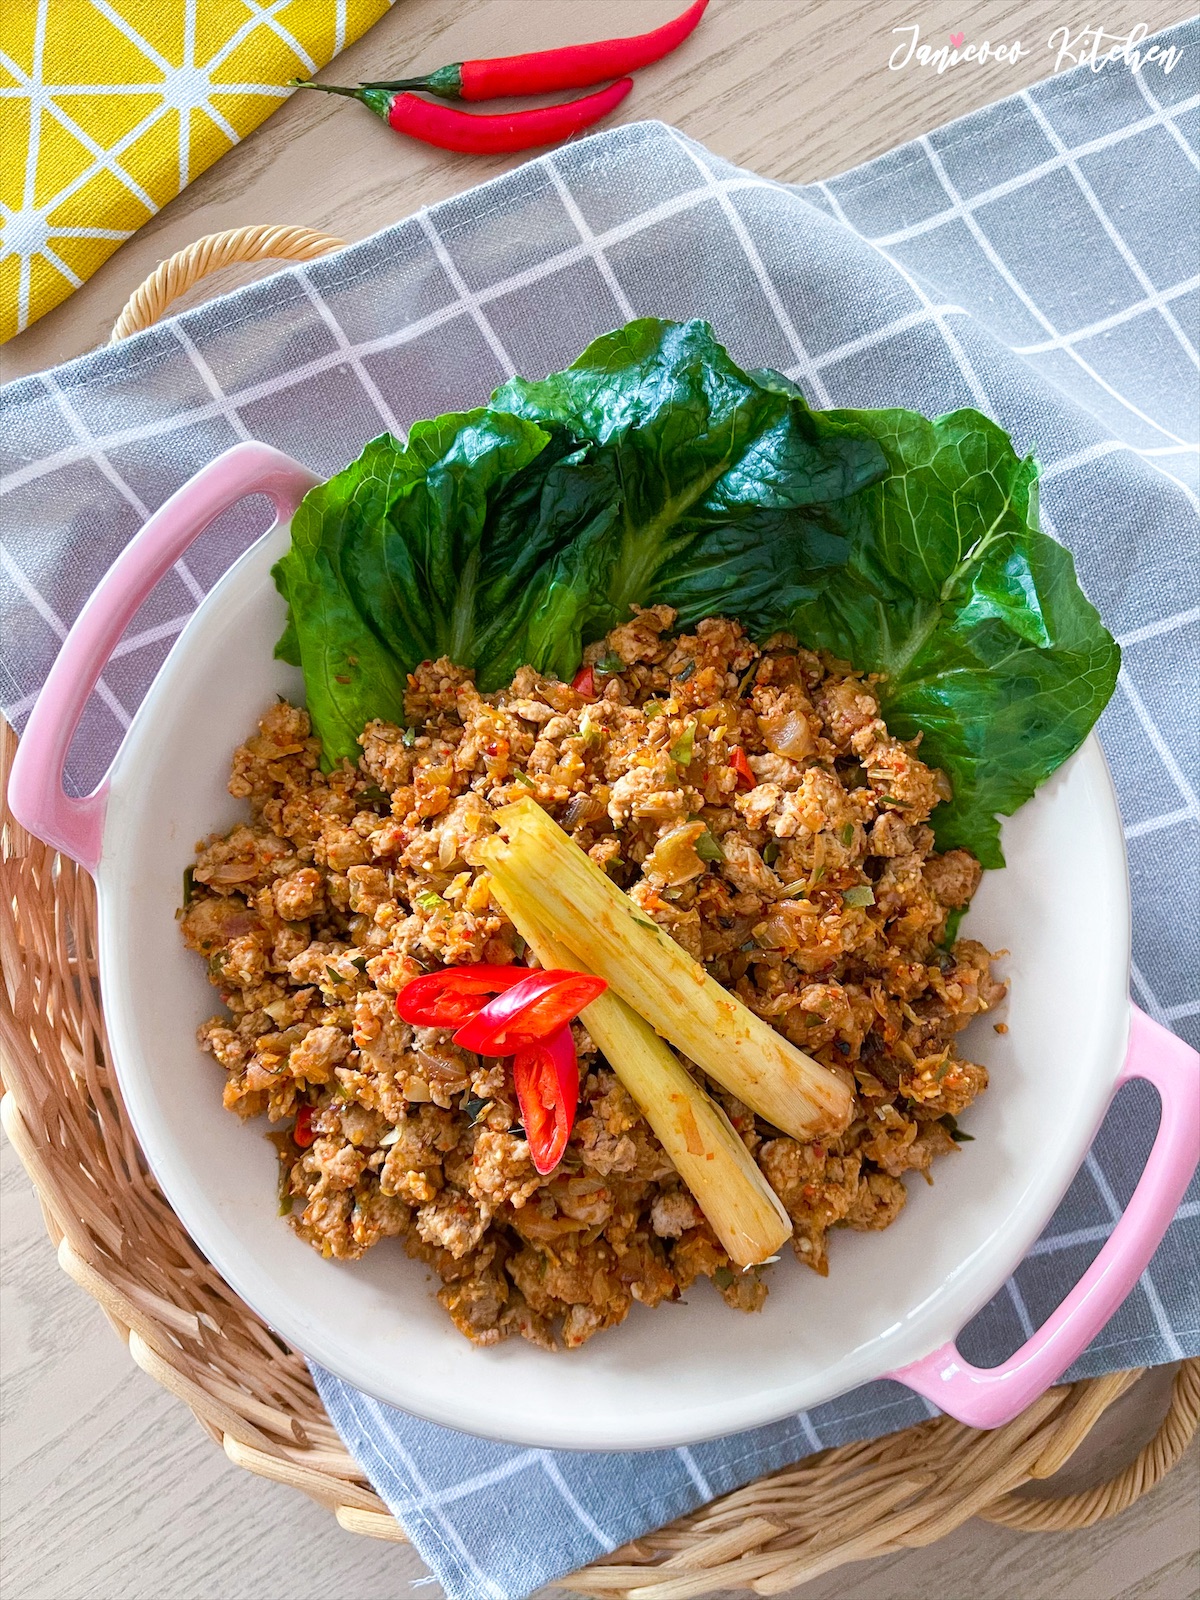 泰式香葉肉碎生菜包 食譜、做法 | CeliaChan的Cook1Cook食譜分享